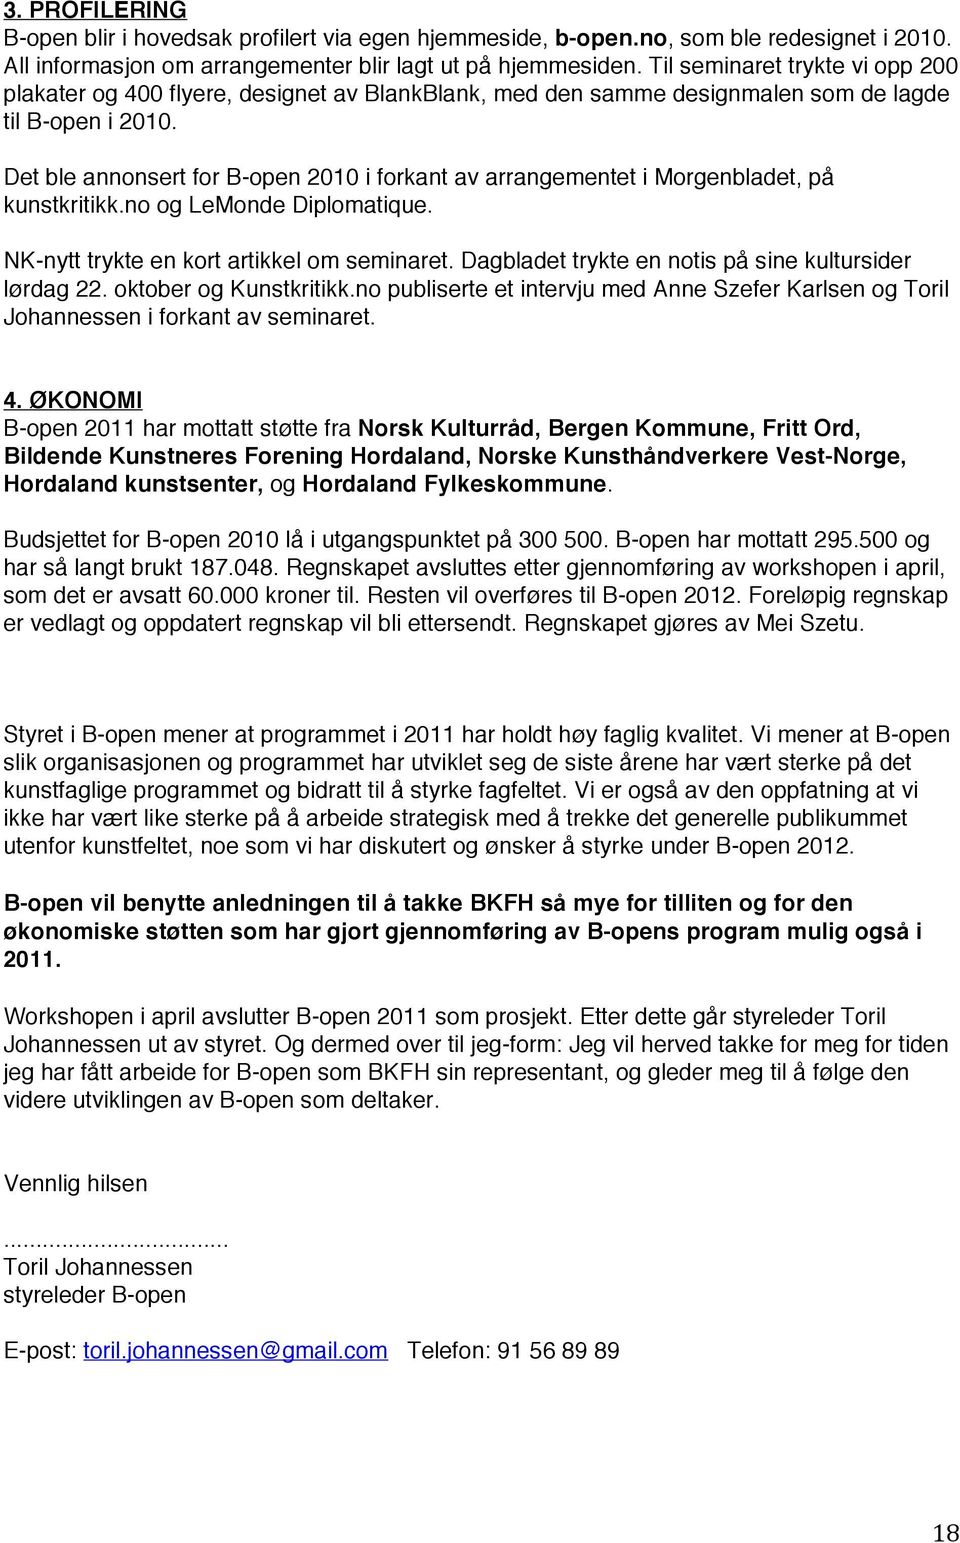 Det ble annonsert for B-open 2010 i forkant av arrangementet i Morgenbladet, på kunstkritikk.no og LeMonde Diplomatique. NK-nytt trykte en kort artikkel om seminaret.